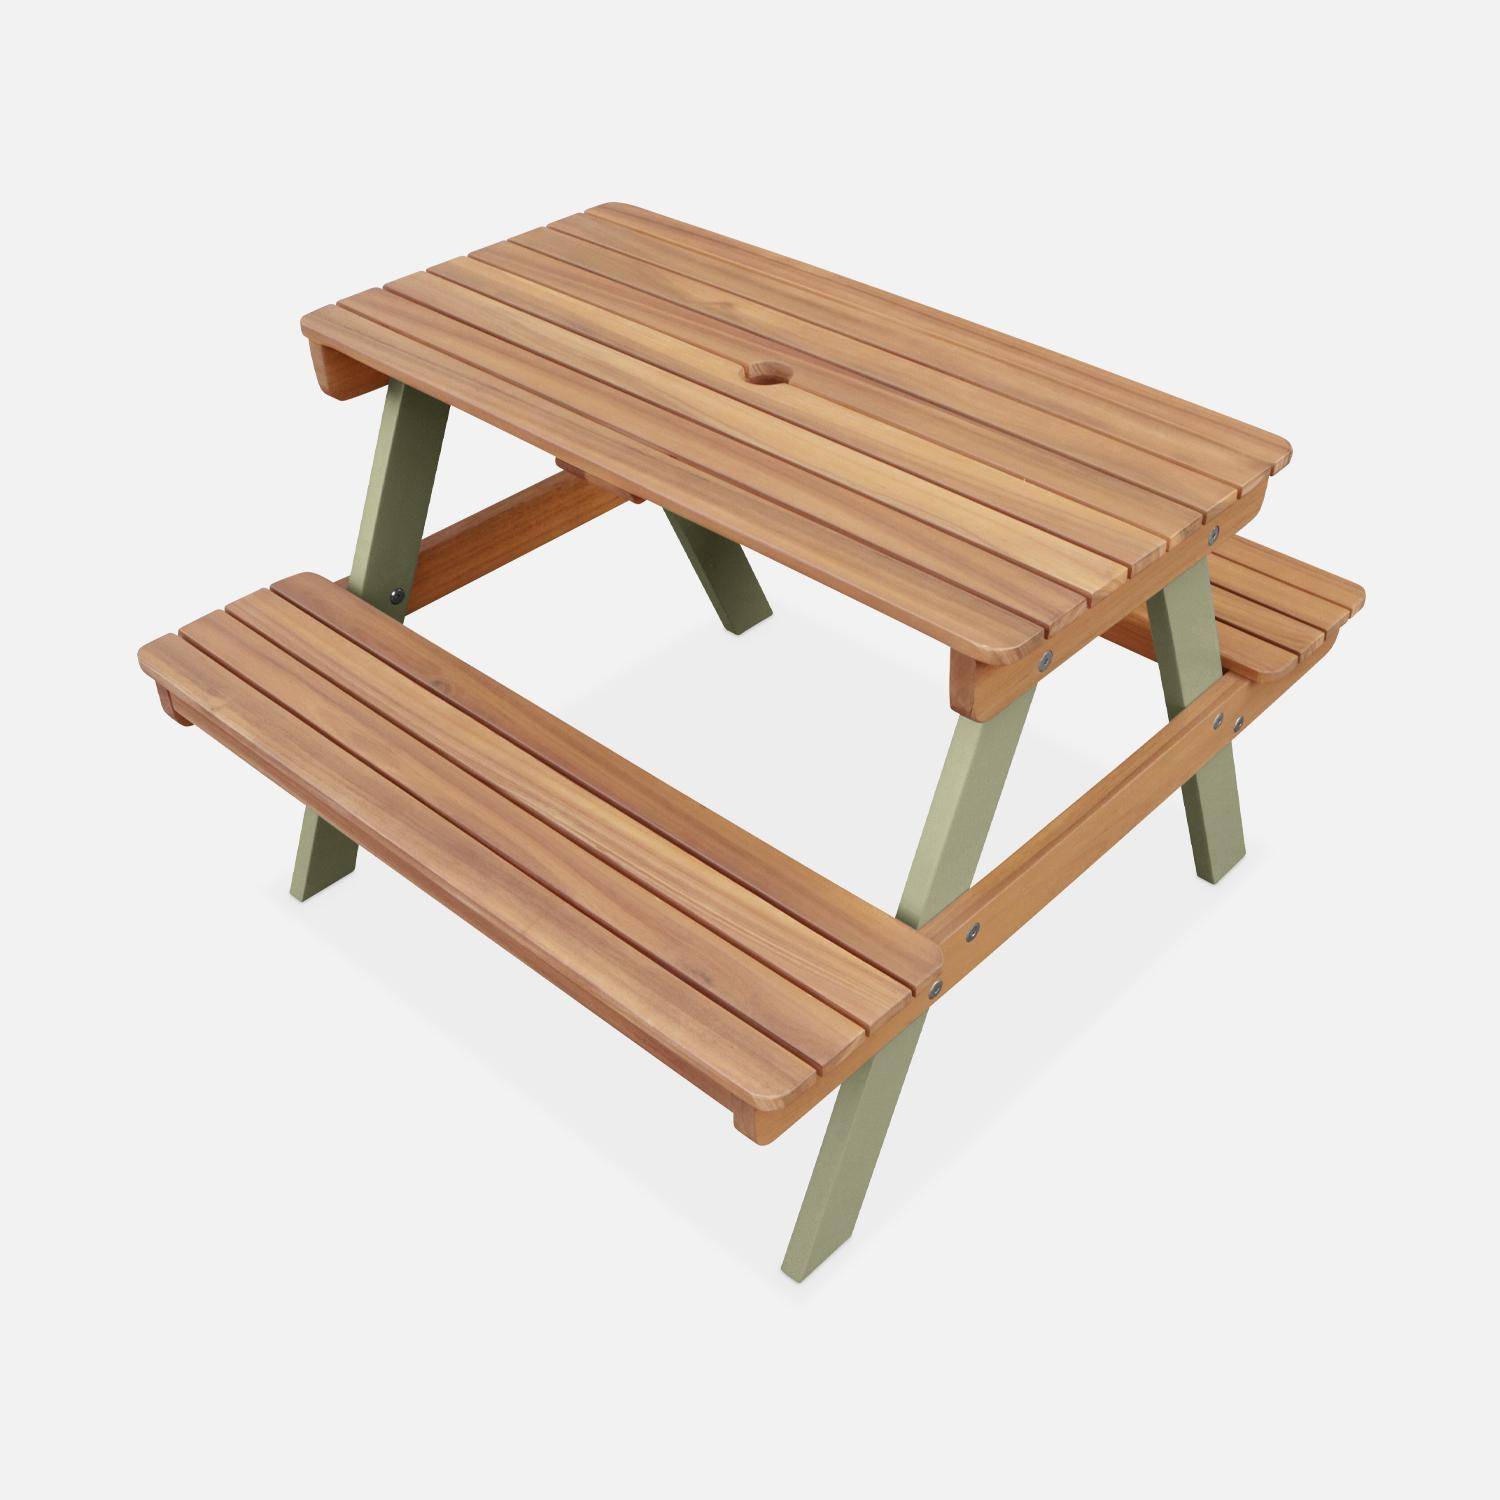 Picknicktisch aus hellem Akazienholz für Kinder, 2 Sitzplätze, naturfarben und graugrün,sweeek,Photo4